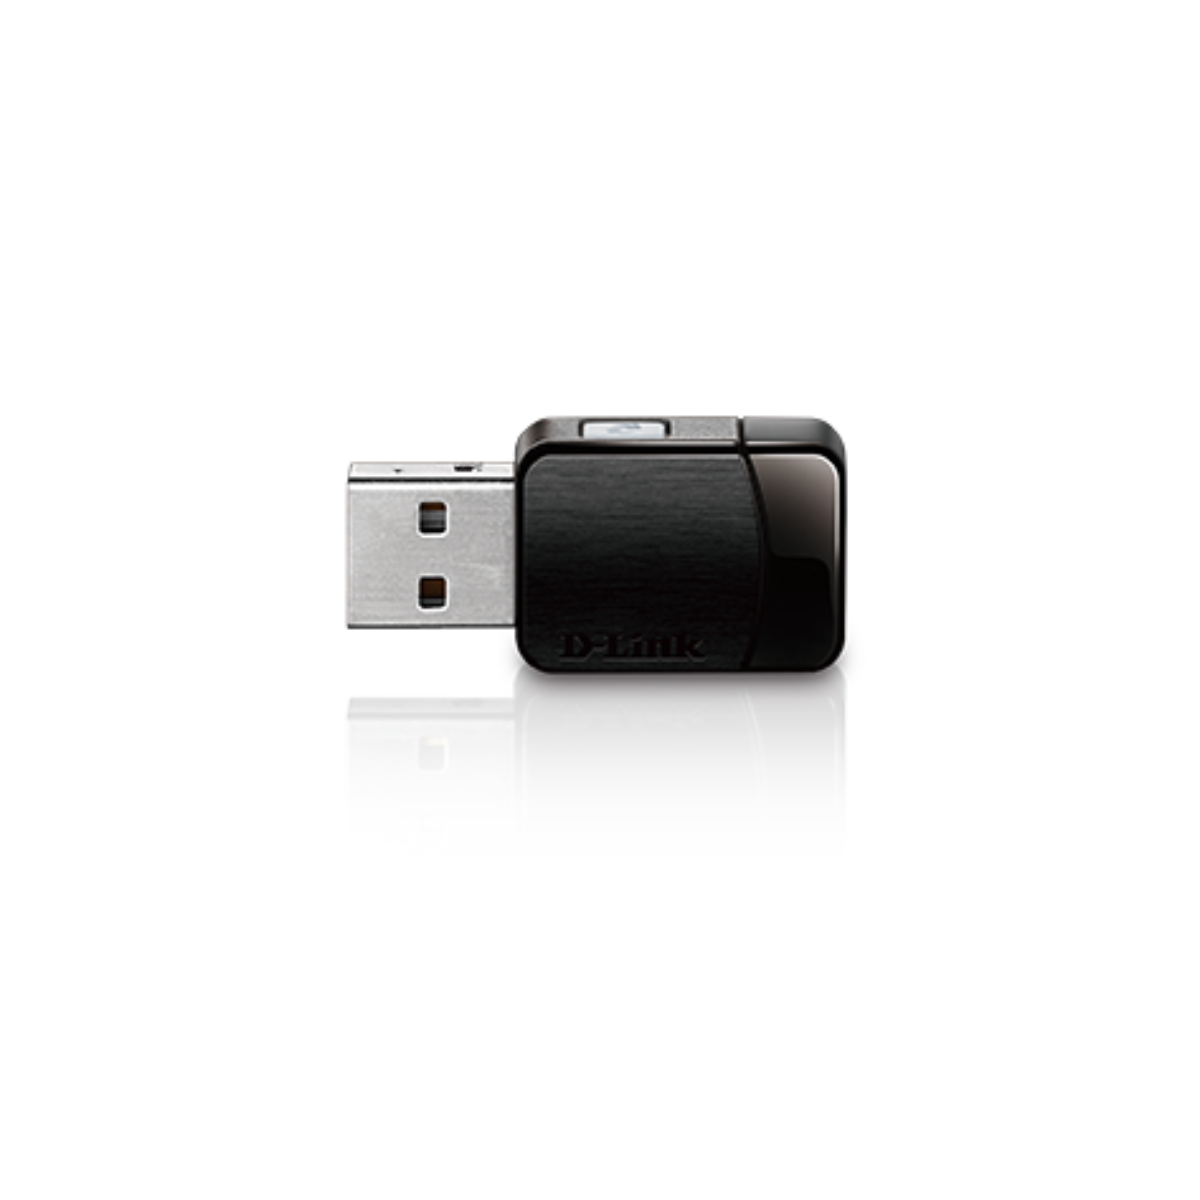 AC600 MU-MIMO Wi-Fi USB Adapter | DWA-171